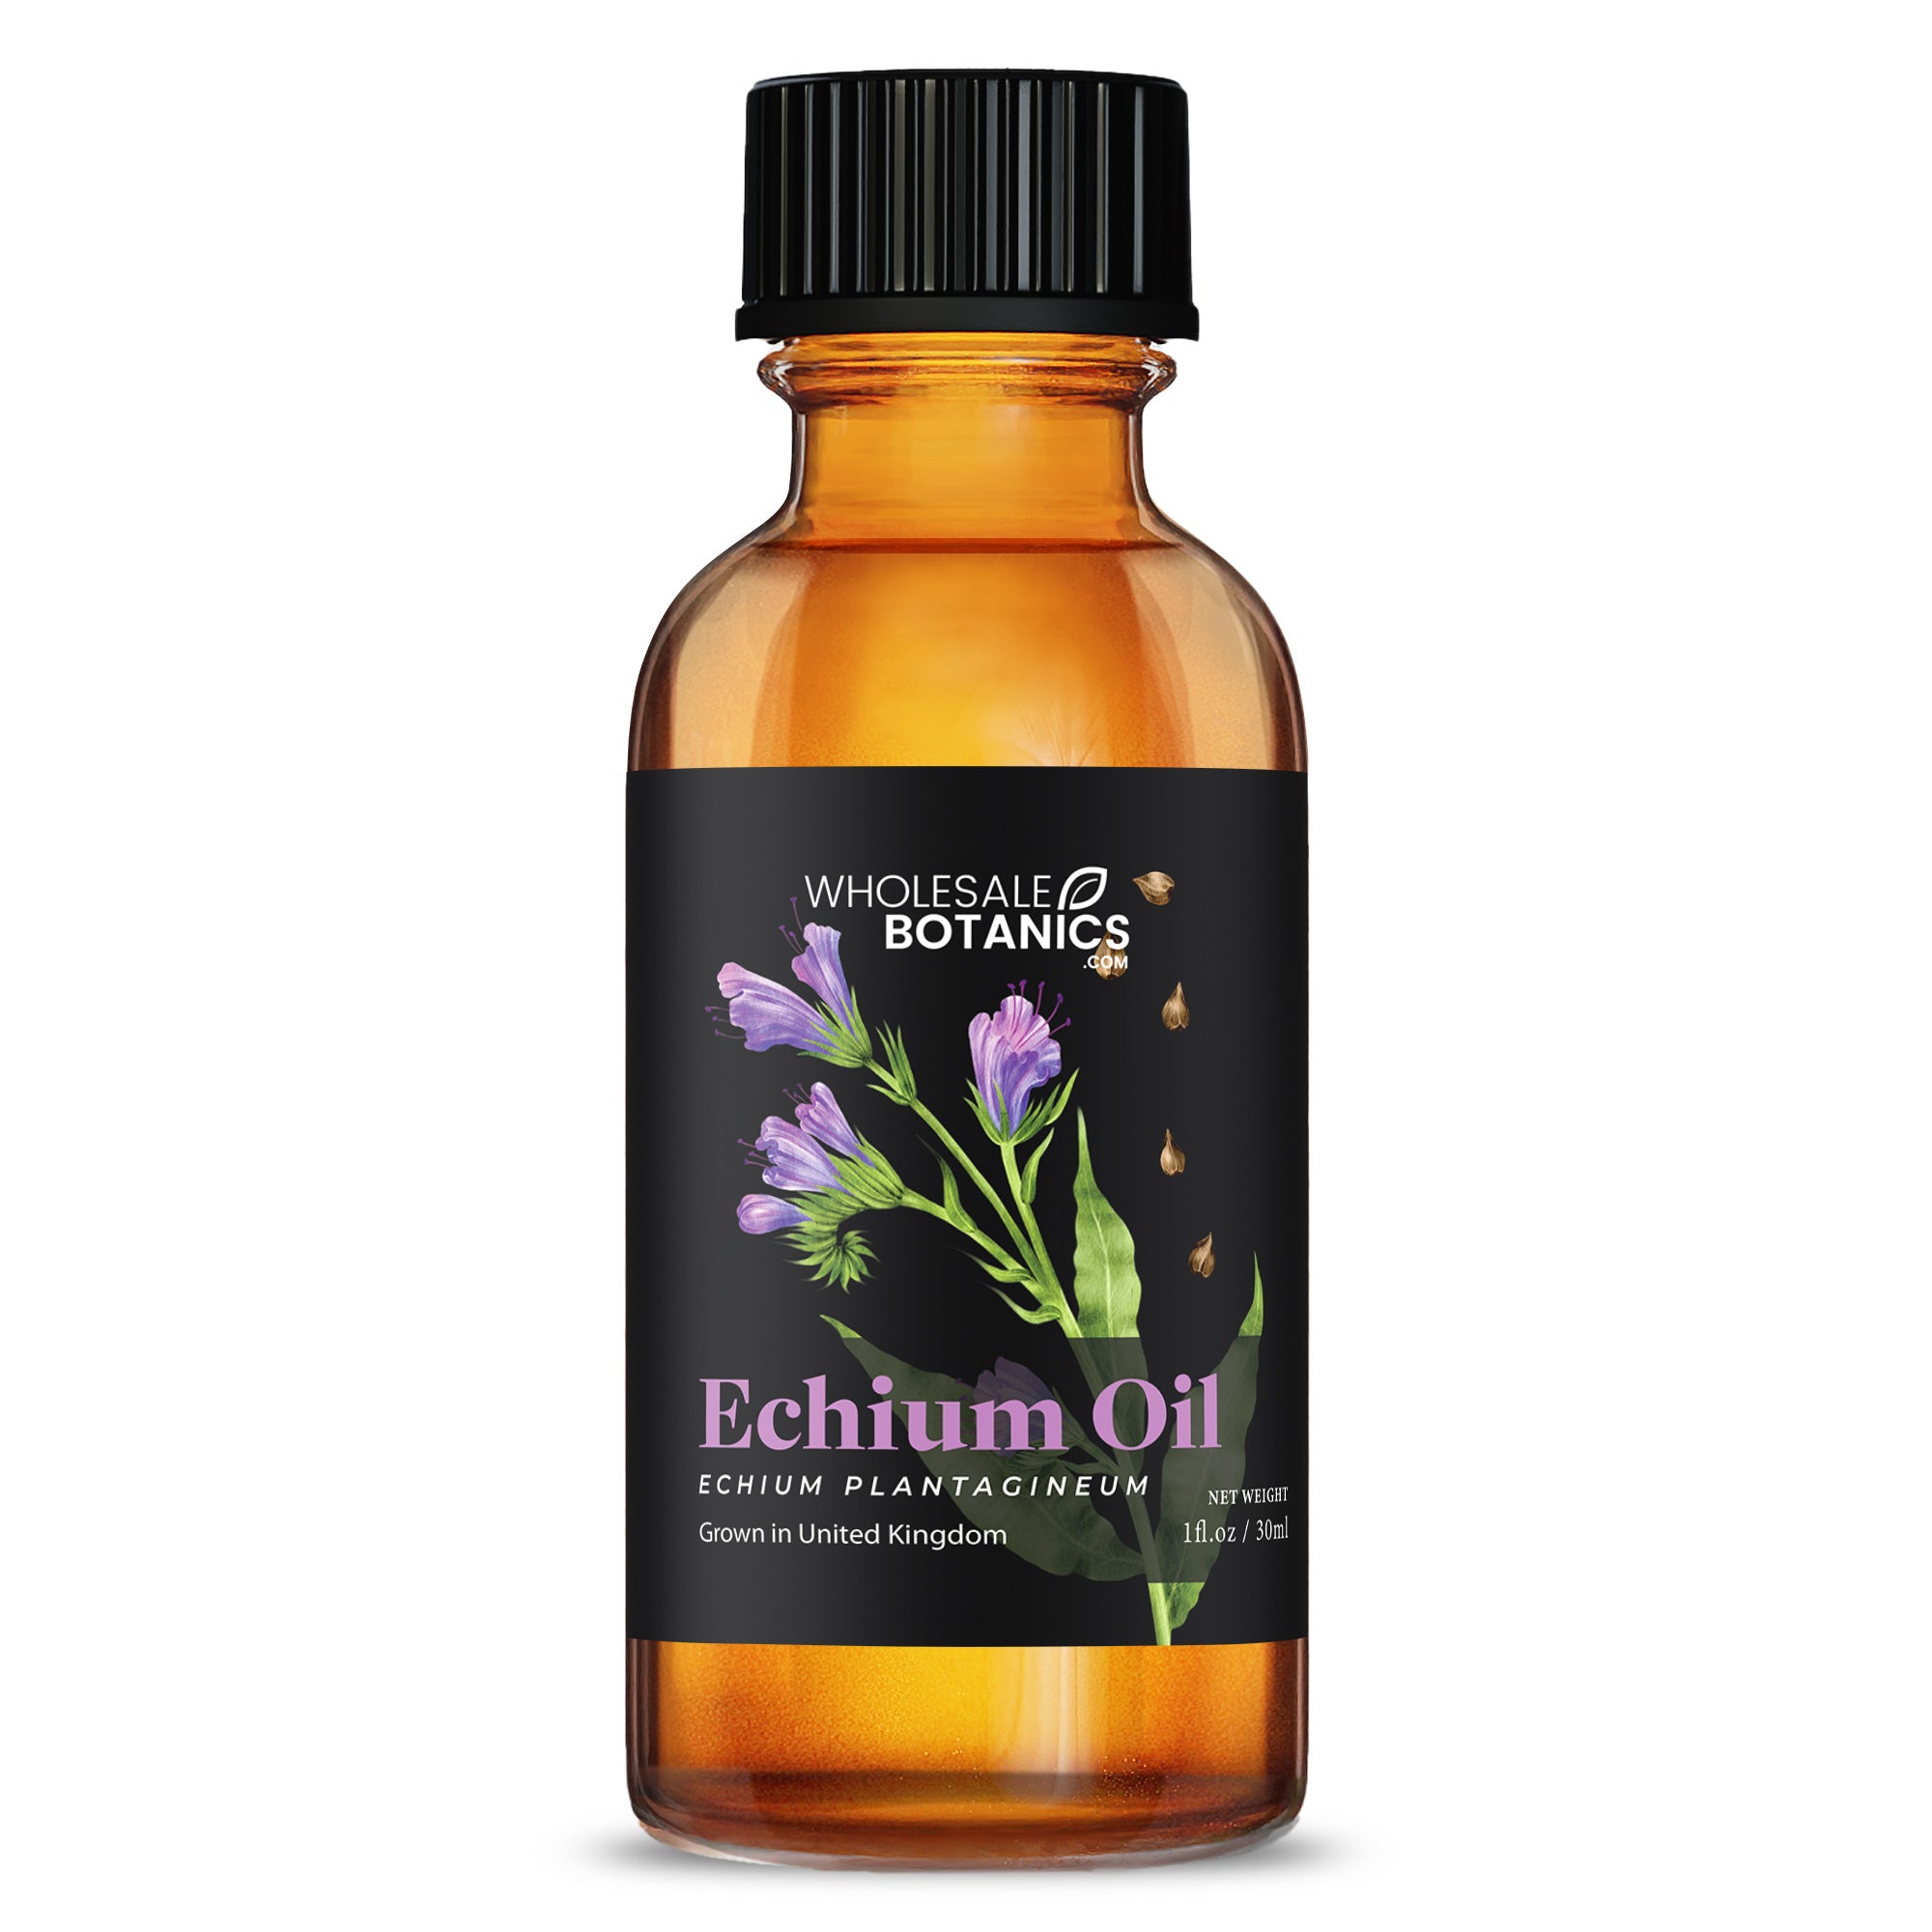 Echium Oil